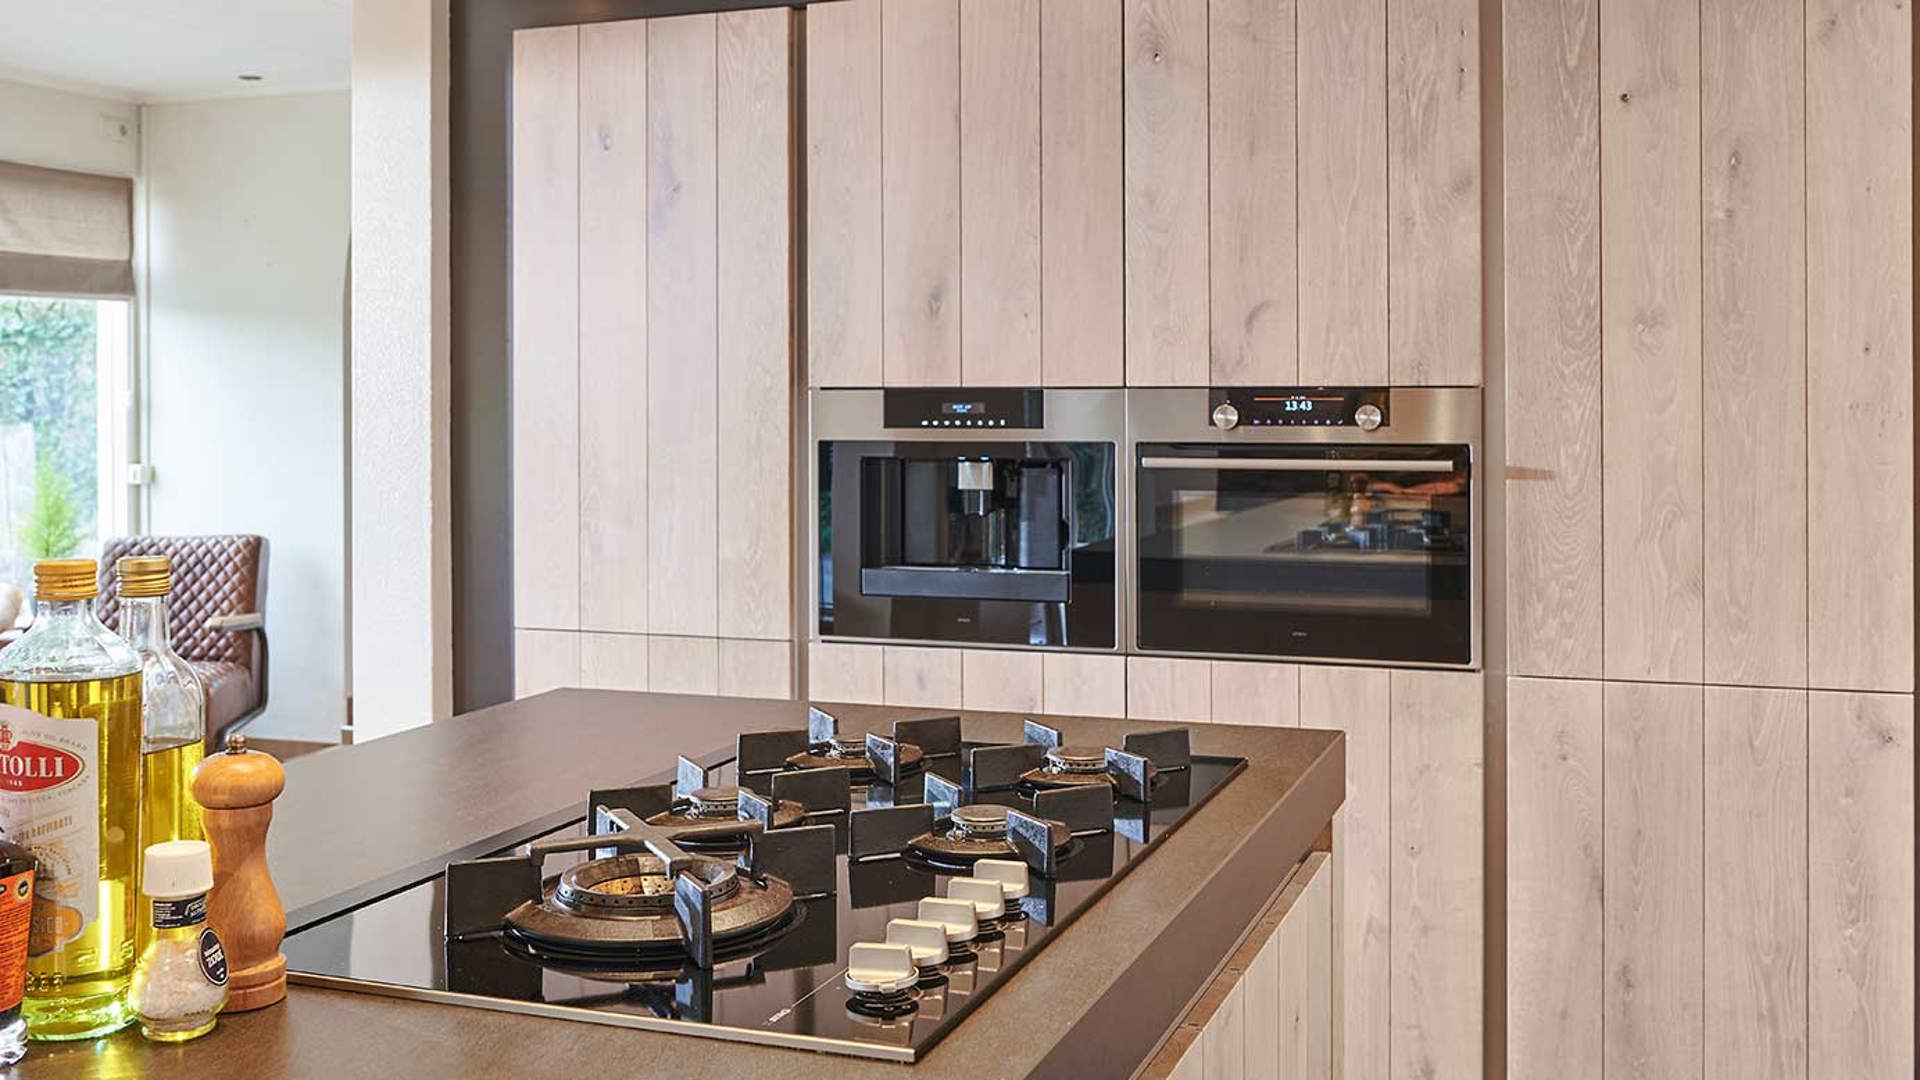 Moderne keukenapparatuur in houten keuken